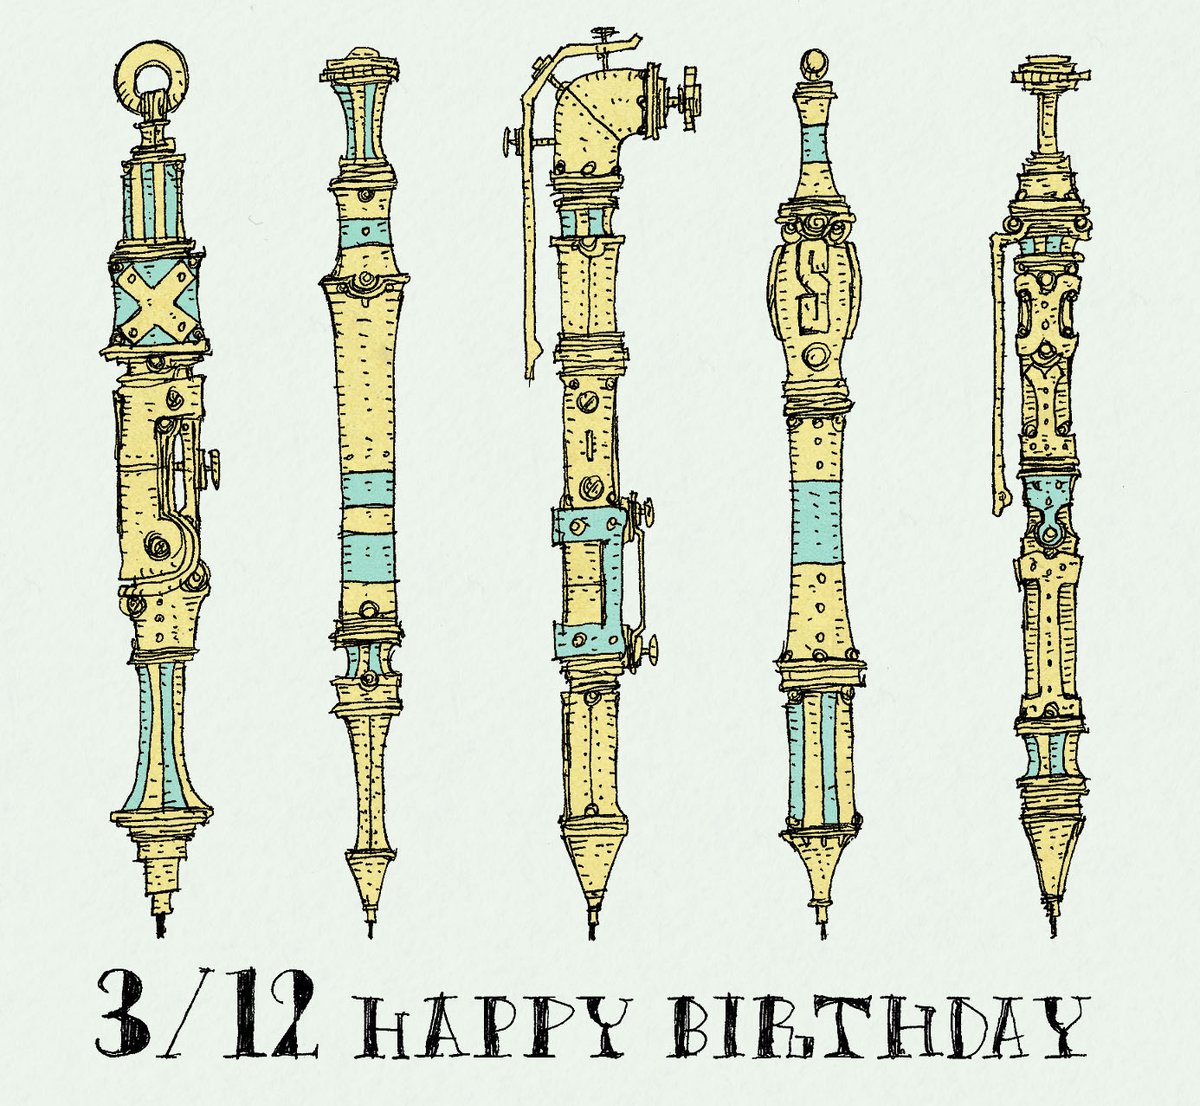 毎日誰かの誕生日。
3月12日生まれの方、
お誕生日おめでとうございます。
3/12生まれの方に届くと嬉しいです。

いつもより開放的な一日となりますように。

#誕生日 #happybirthday #3月12日 #3月 #ボールペン画 